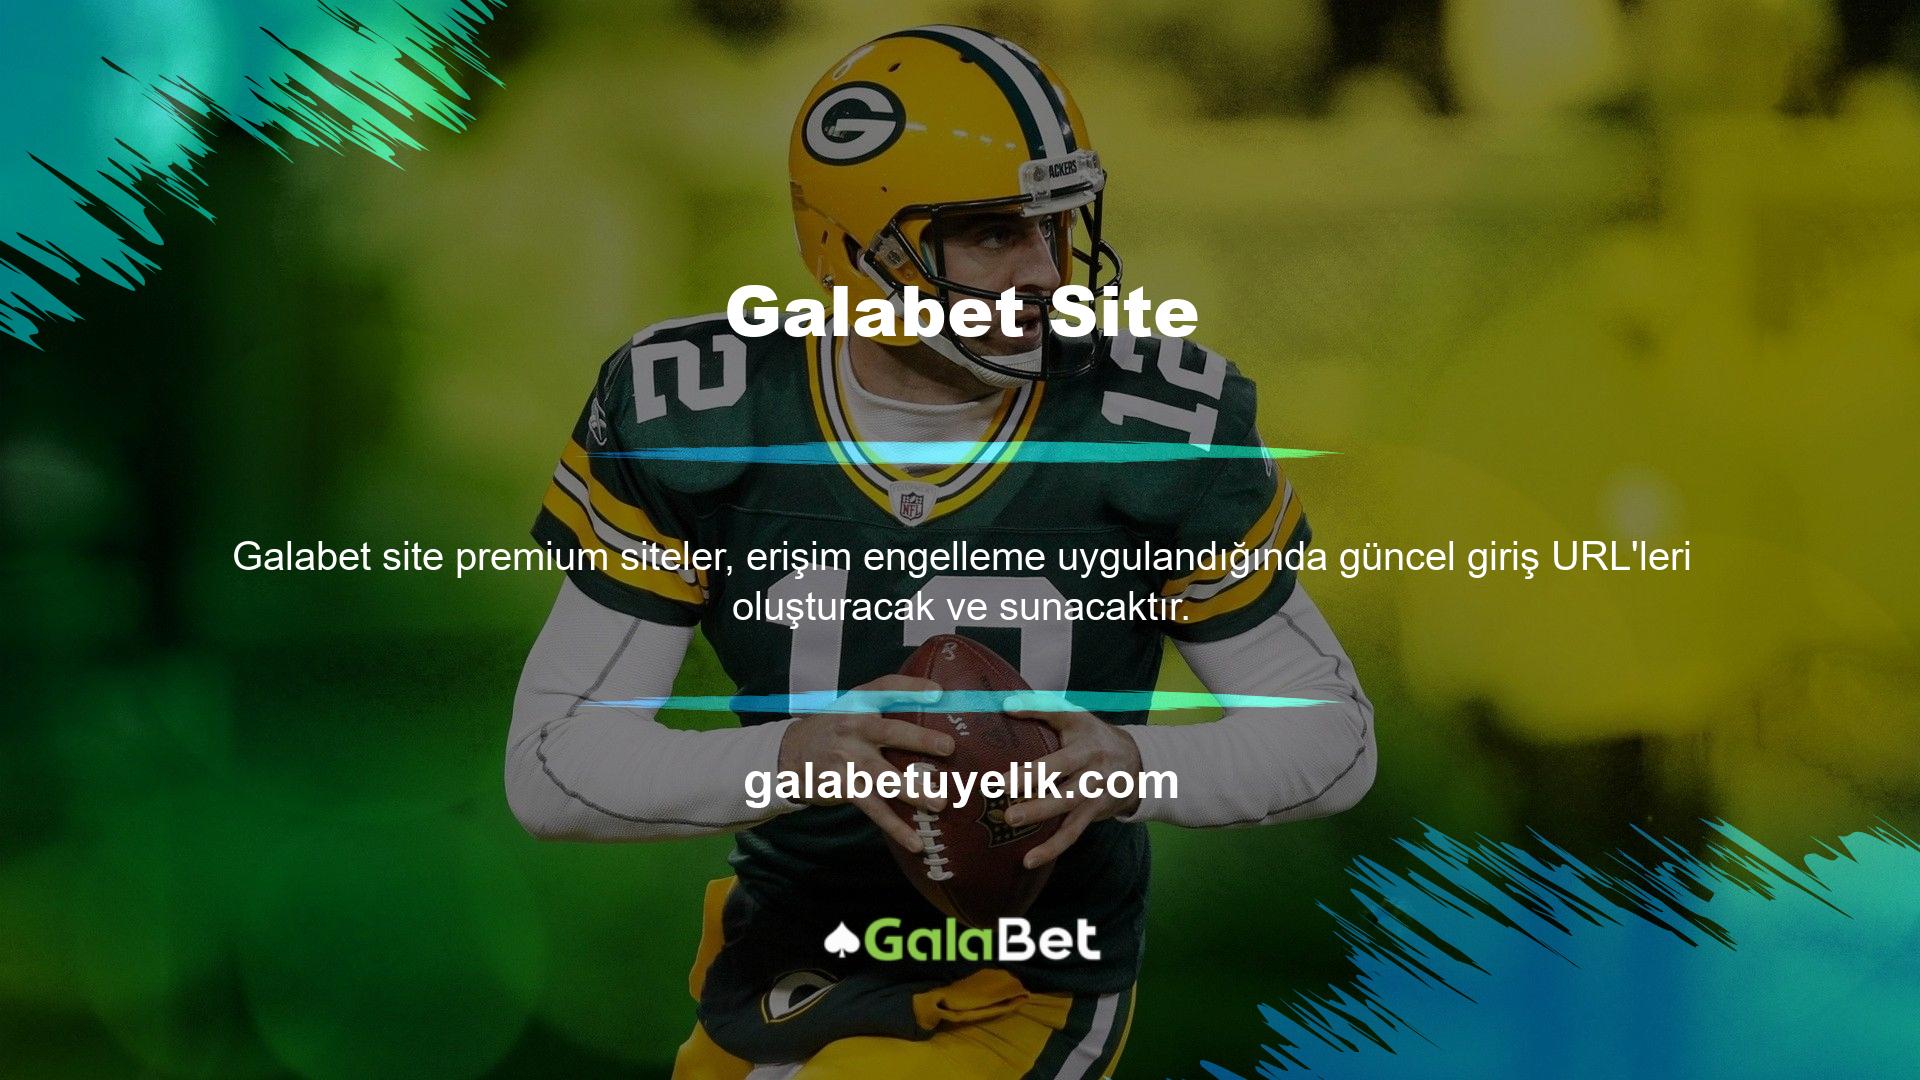 Bu amaçla Galabet, yeni giriş adresi bilgilerinizi girerek profesyonel hizmetlerin sunulduğu Galabet web sitesine gönderecektir